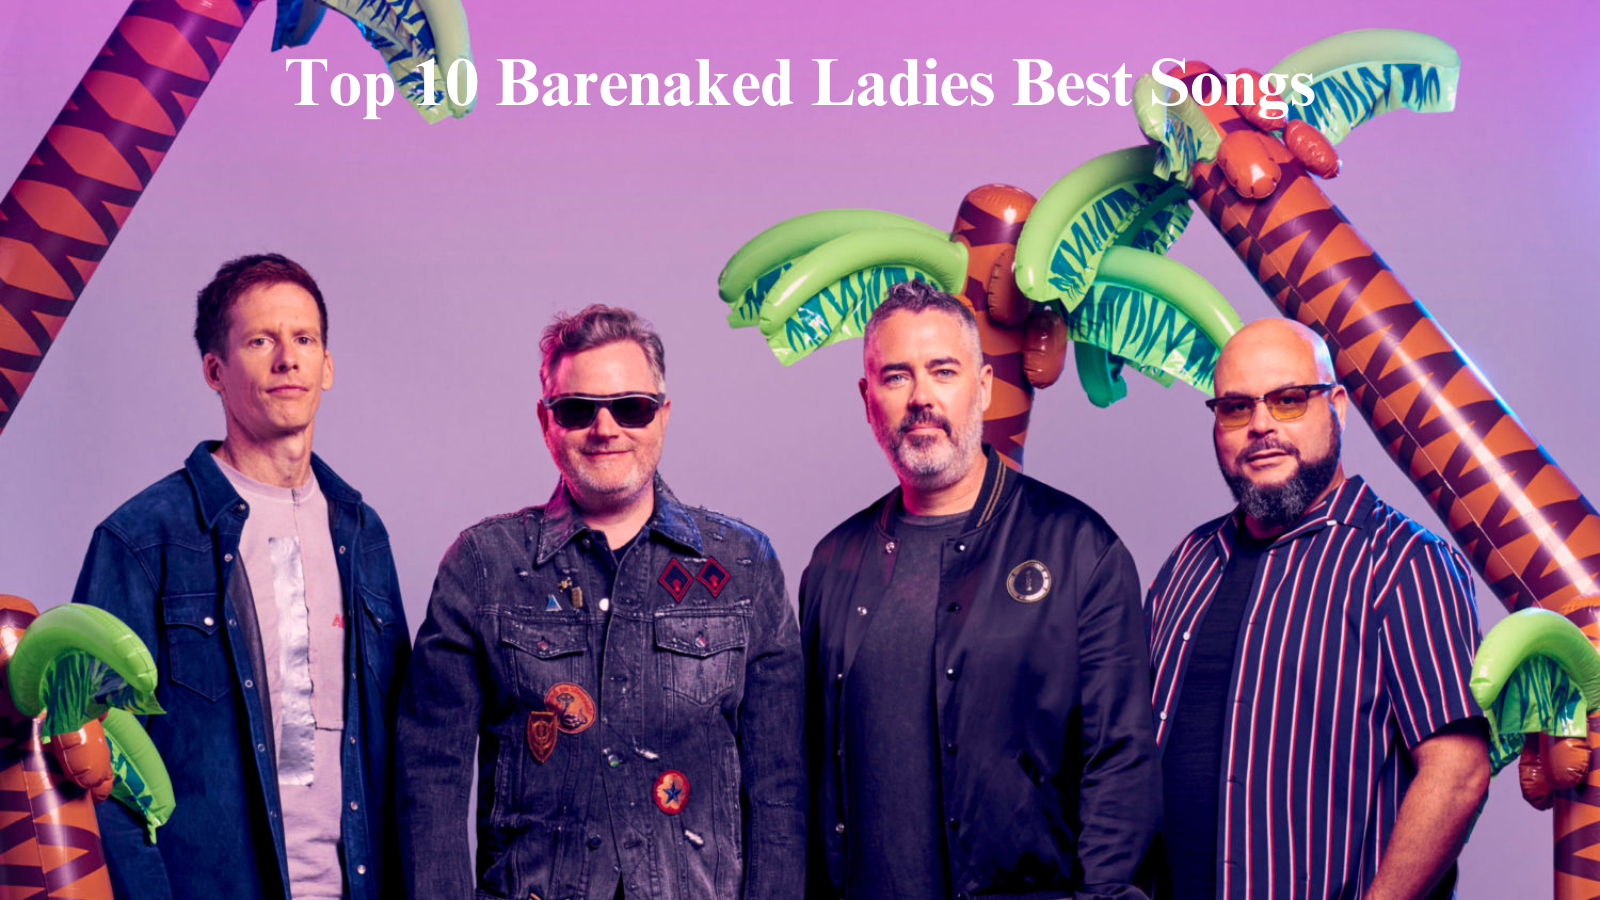 Top 10 Barenaked Ladies Best Songs